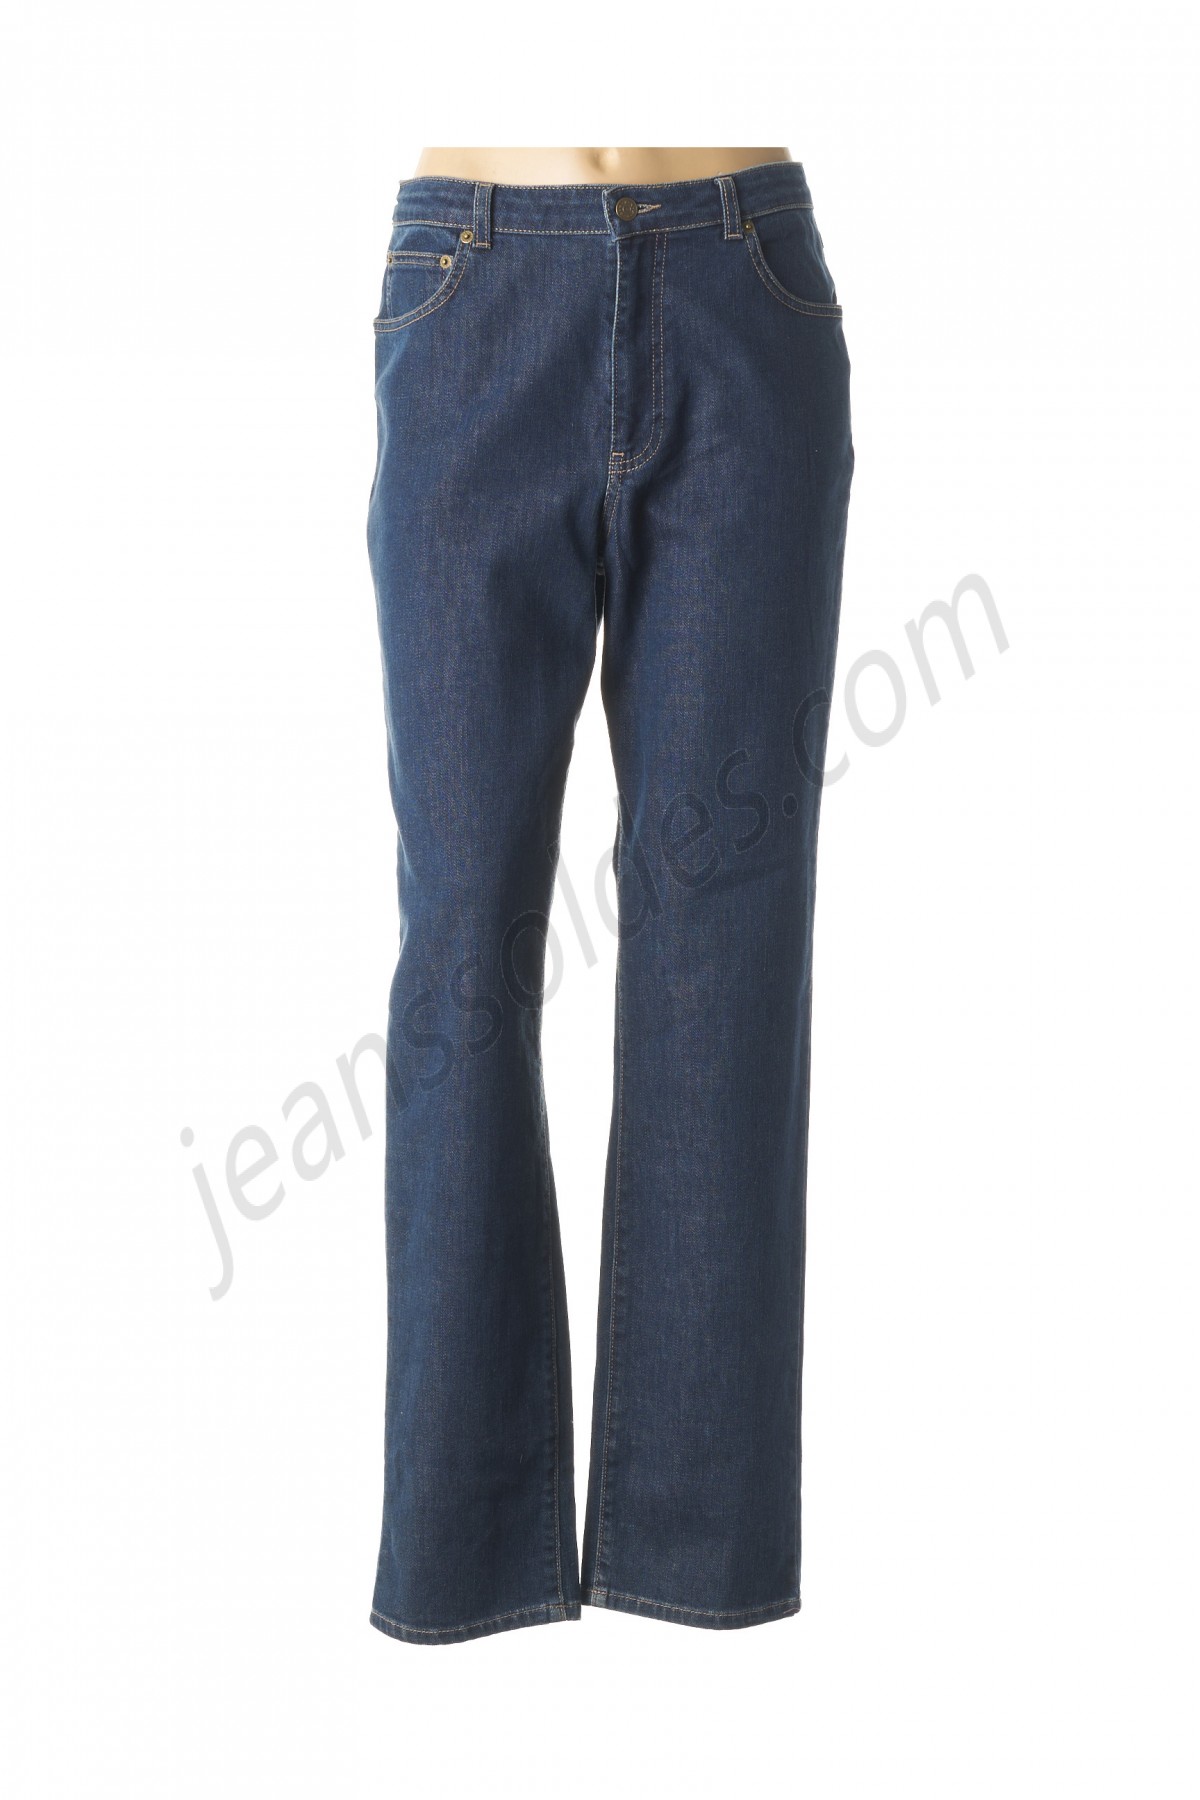 jean gabriel-Jeans coupe slim prix d’amis - -0